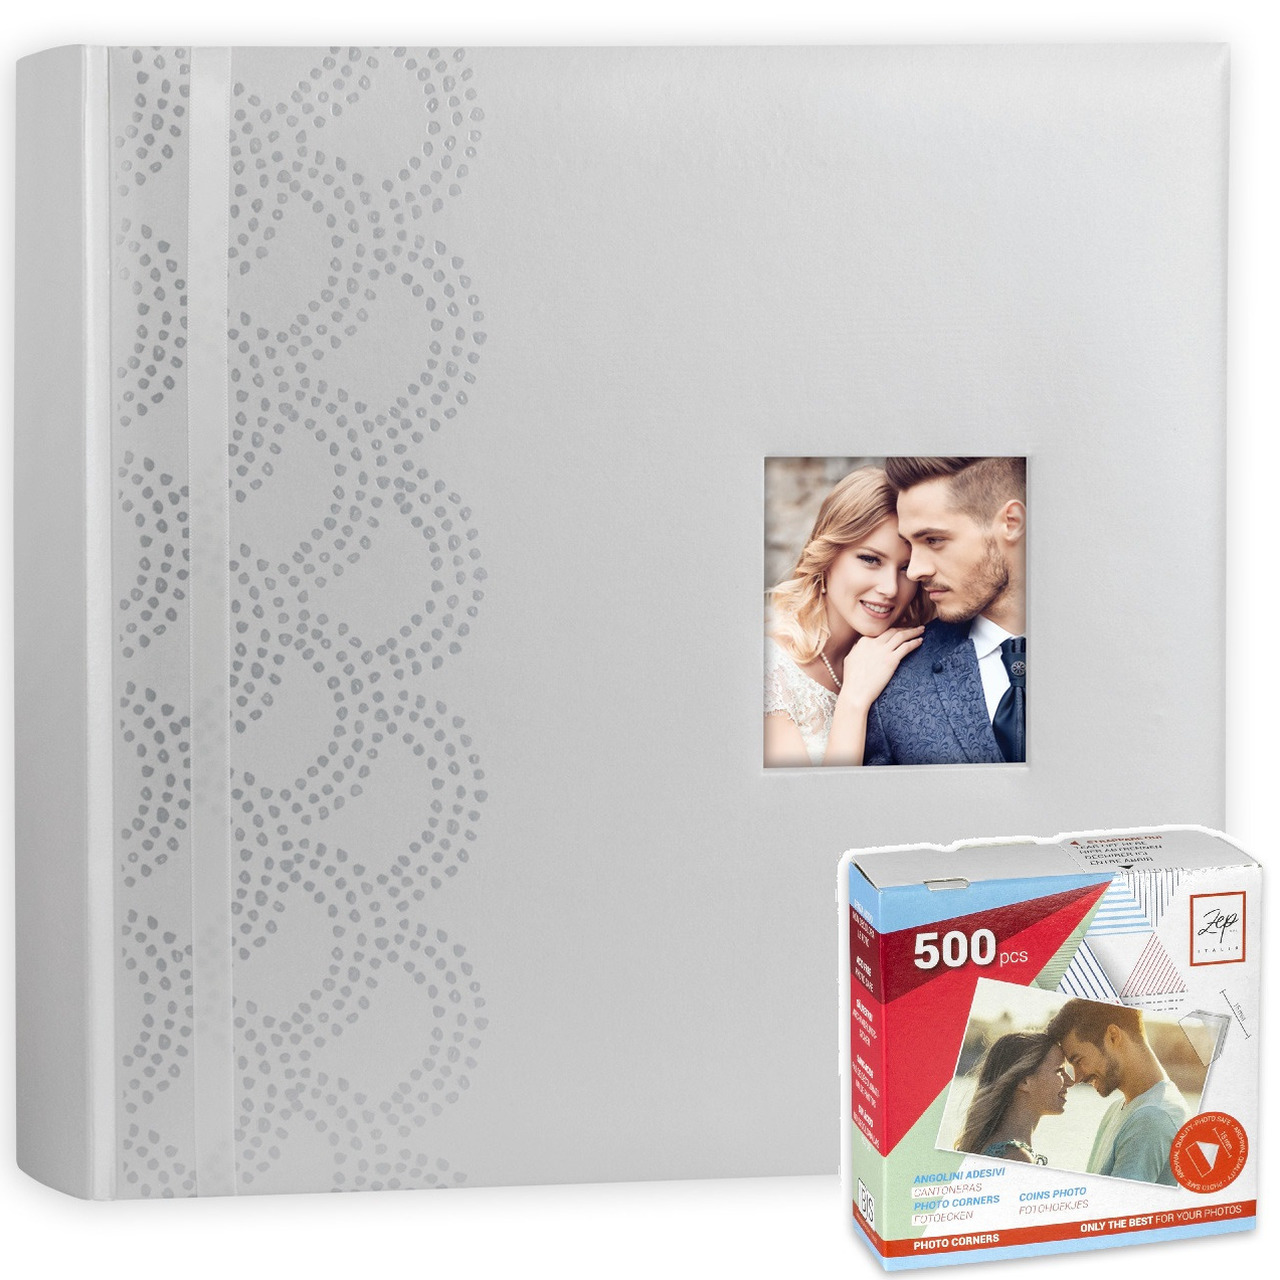 Luxe fotoboek-fotoalbum Anais bruiloft-huwelijk met 50 paginas wit 32 x 32 x 5 cm inclusief plakkers